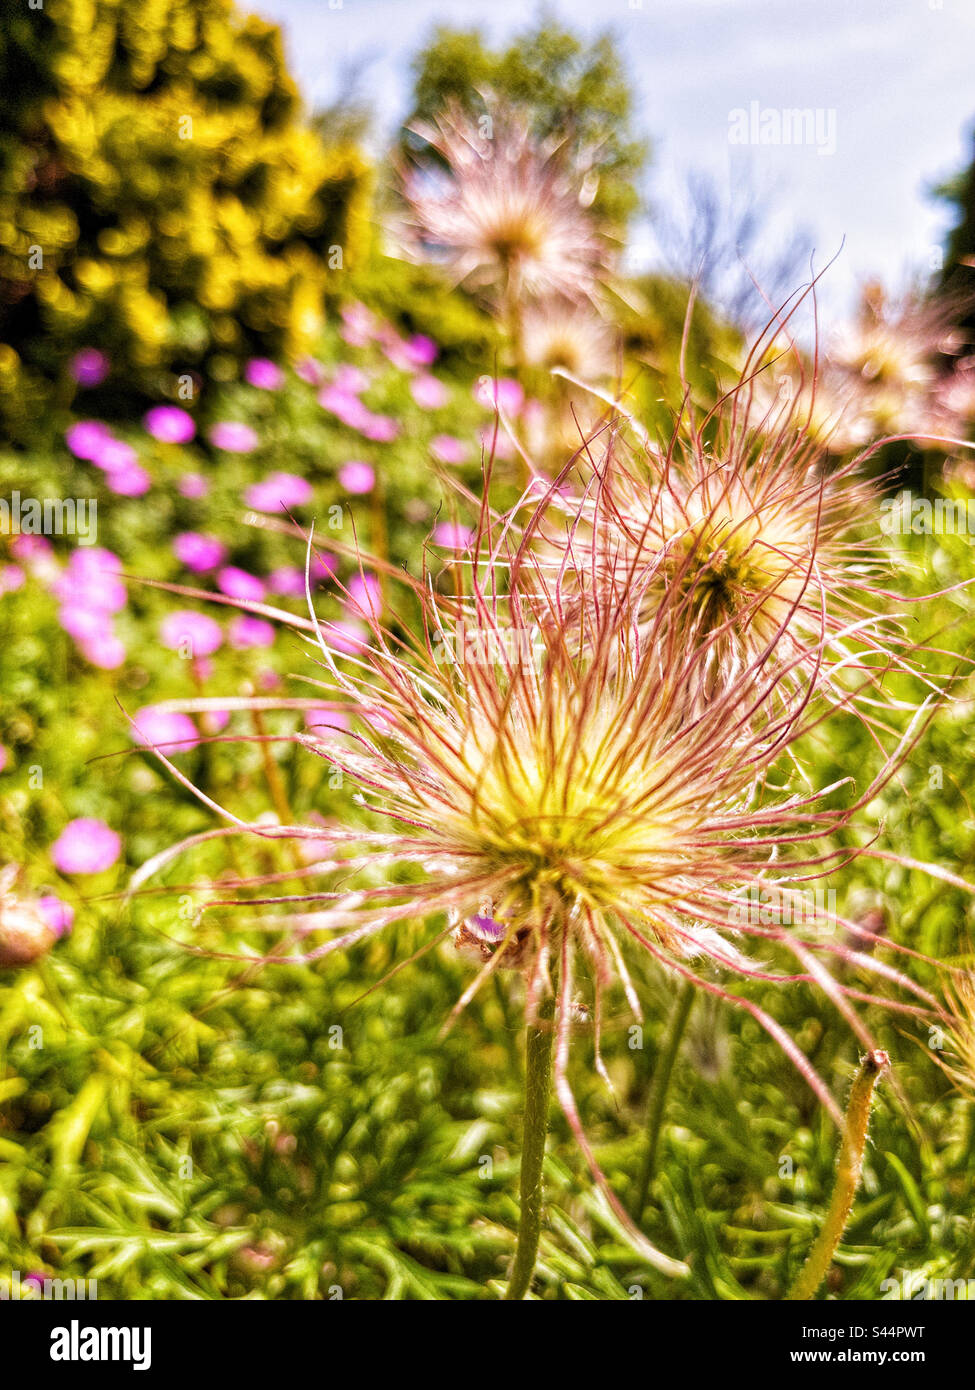 Flower pulsatilla, in garden Stock Photo